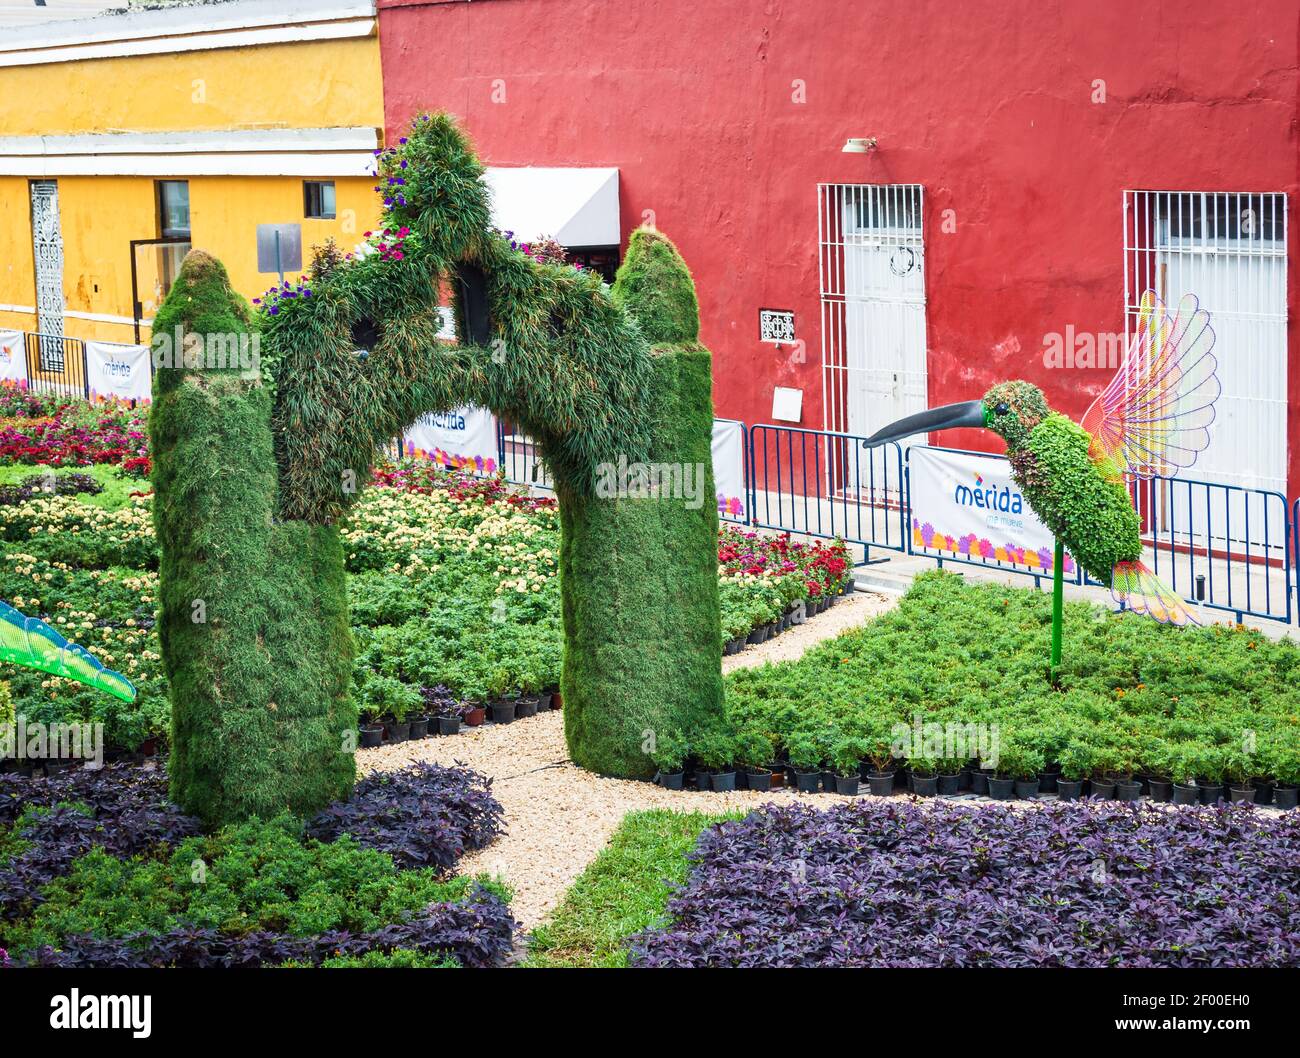 Ausstellung von Blumen- und Pflanzenskulpturen in Merida, Yucatan, Mexiko. Kolibri Pflanze Skulptur umgeben von Blumenbeeten. Stockfoto